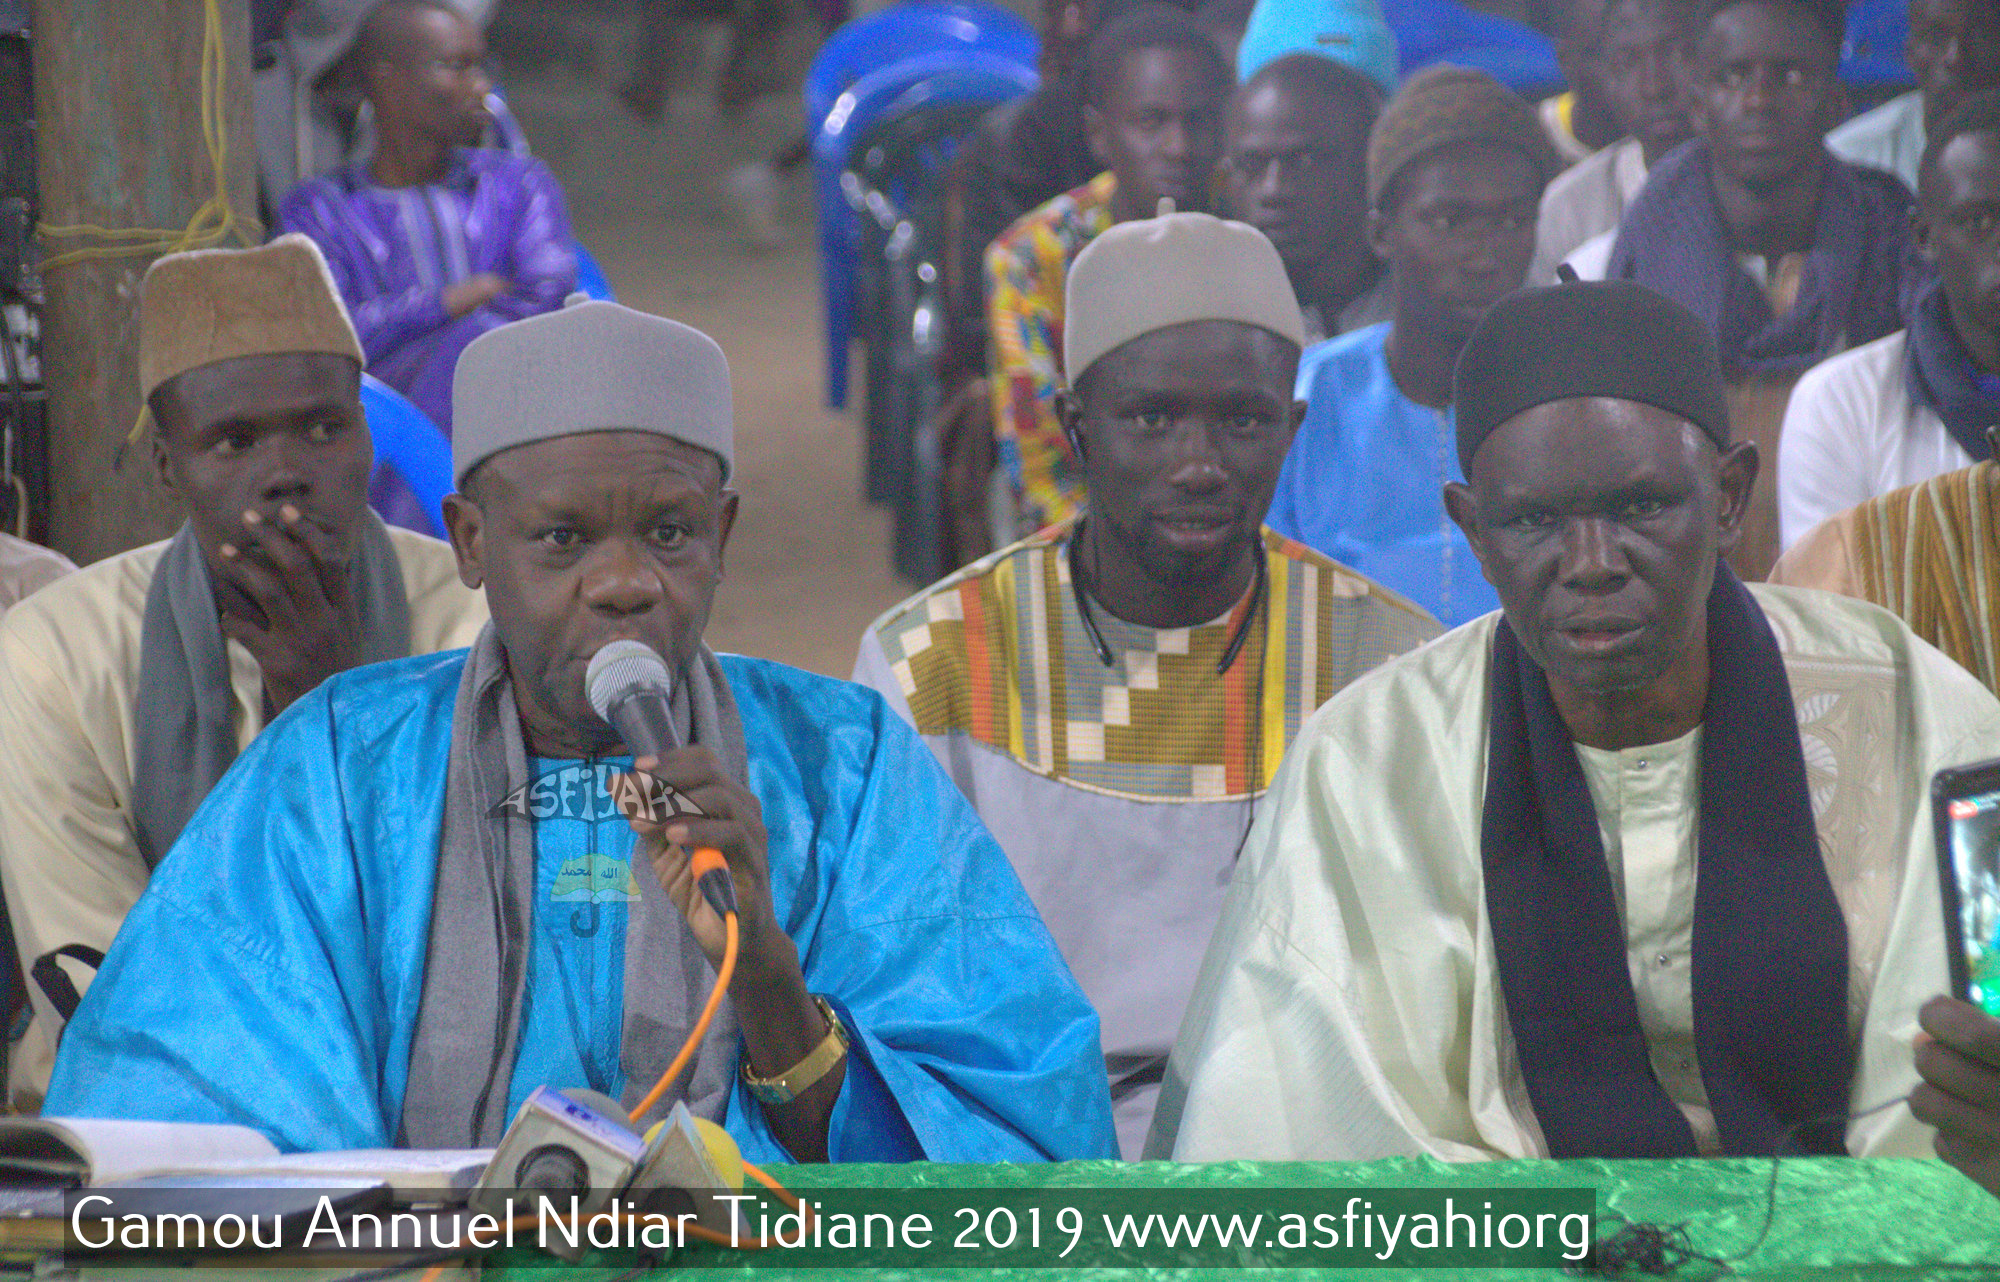 PHOTOS - Les Imagesdu Gamou 2019 de Ndiar Tidiane, présidé par Serigne Habib SY Mansour